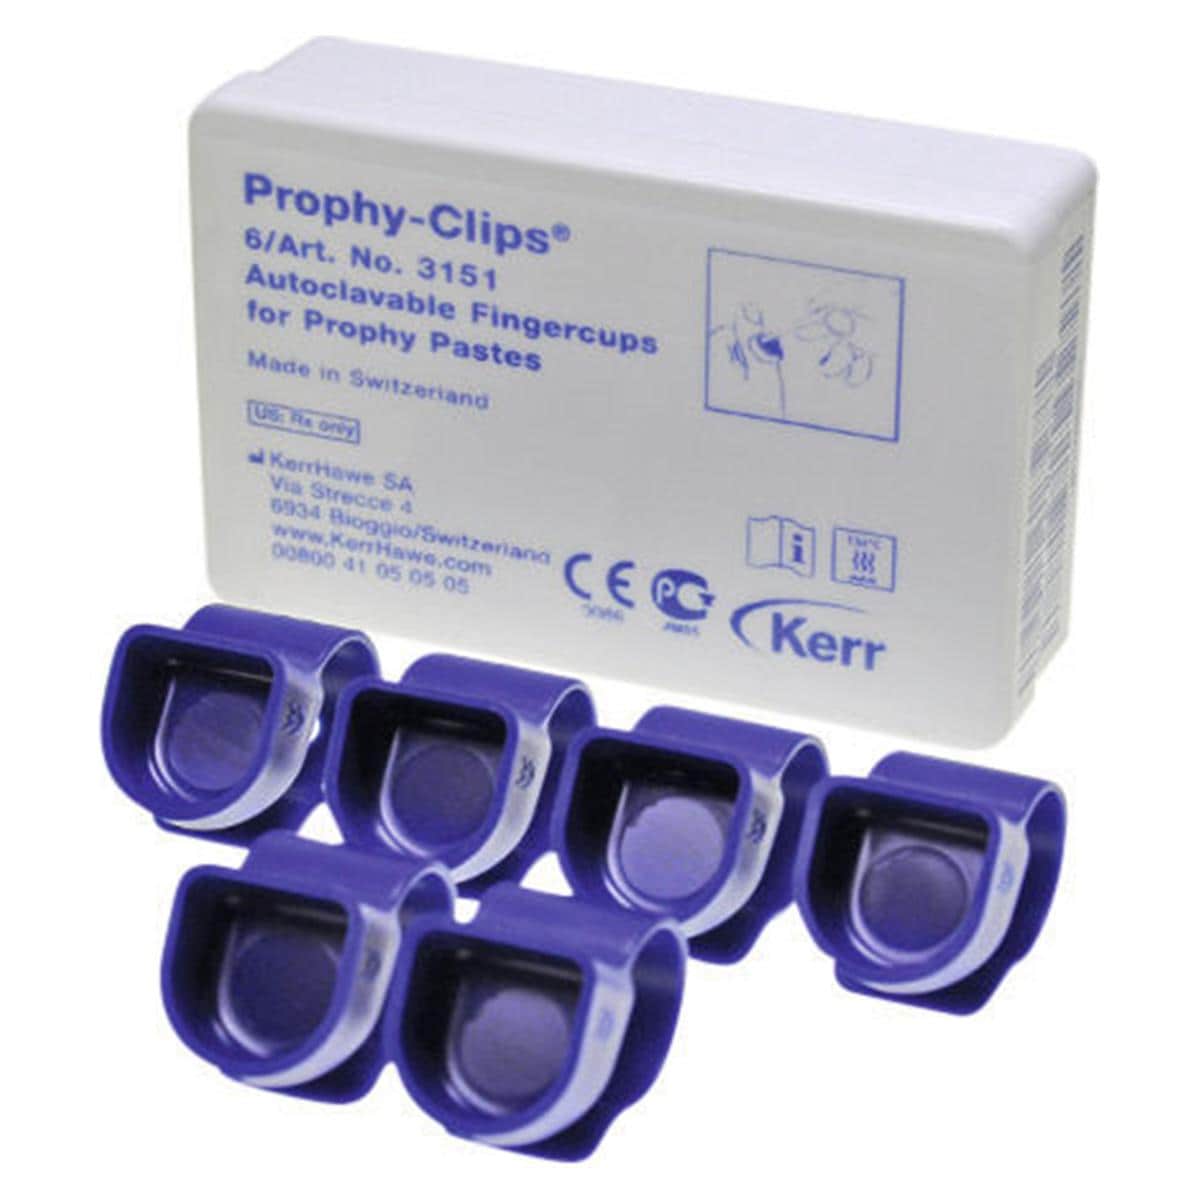 Prophy Clips - 3151, 6 stuks